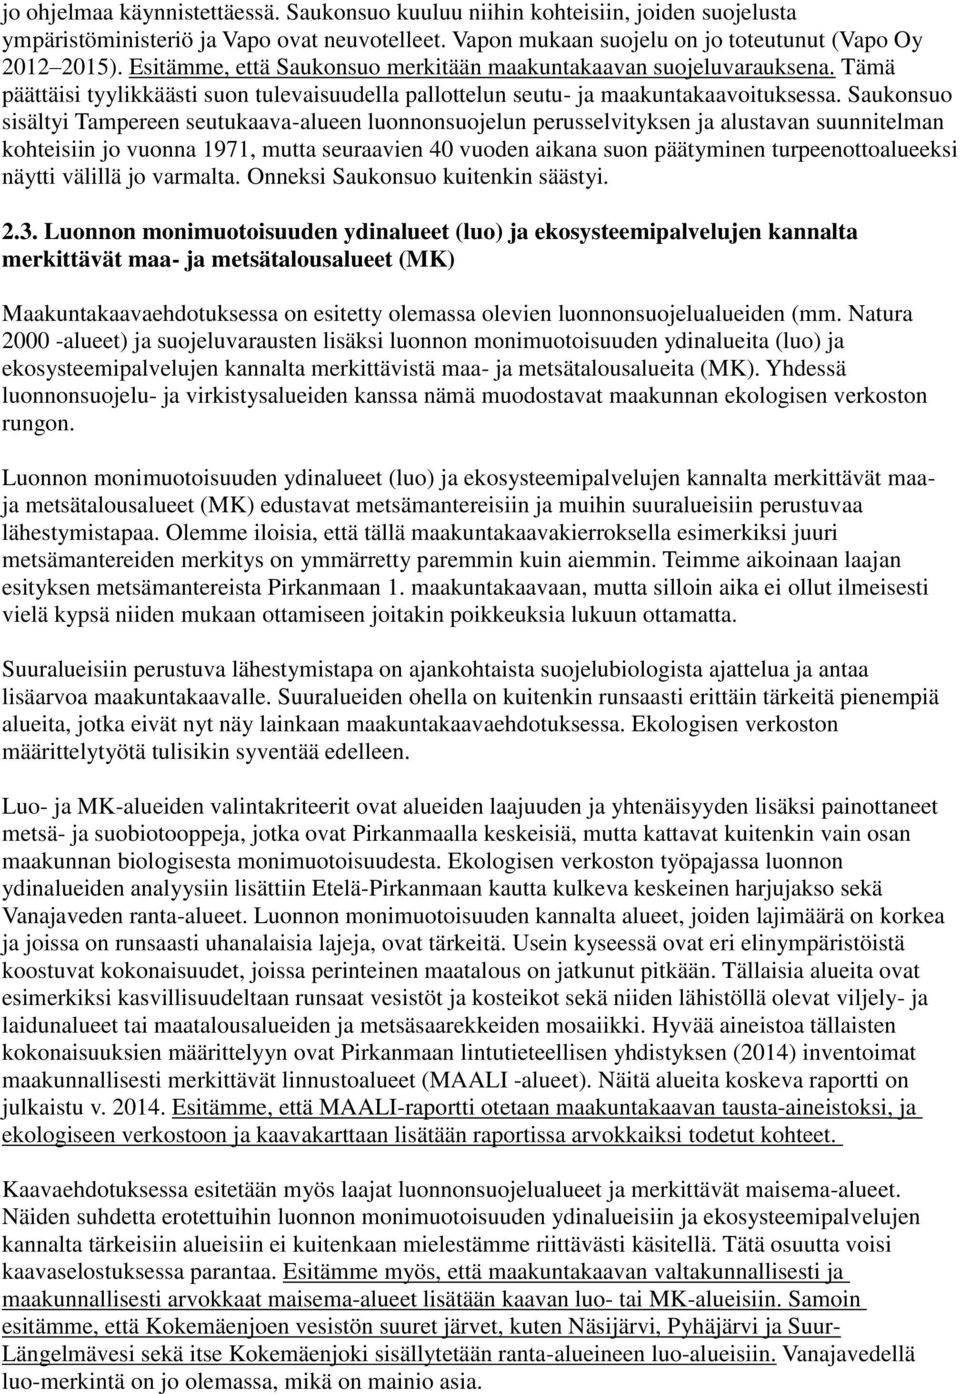 Saukonsuo sisältyi Tampereen seutukaava-alueen luonnonsuojelun perusselvityksen ja alustavan suunnitelman kohteisiin jo vuonna 1971, mutta seuraavien 40 vuoden aikana suon päätyminen